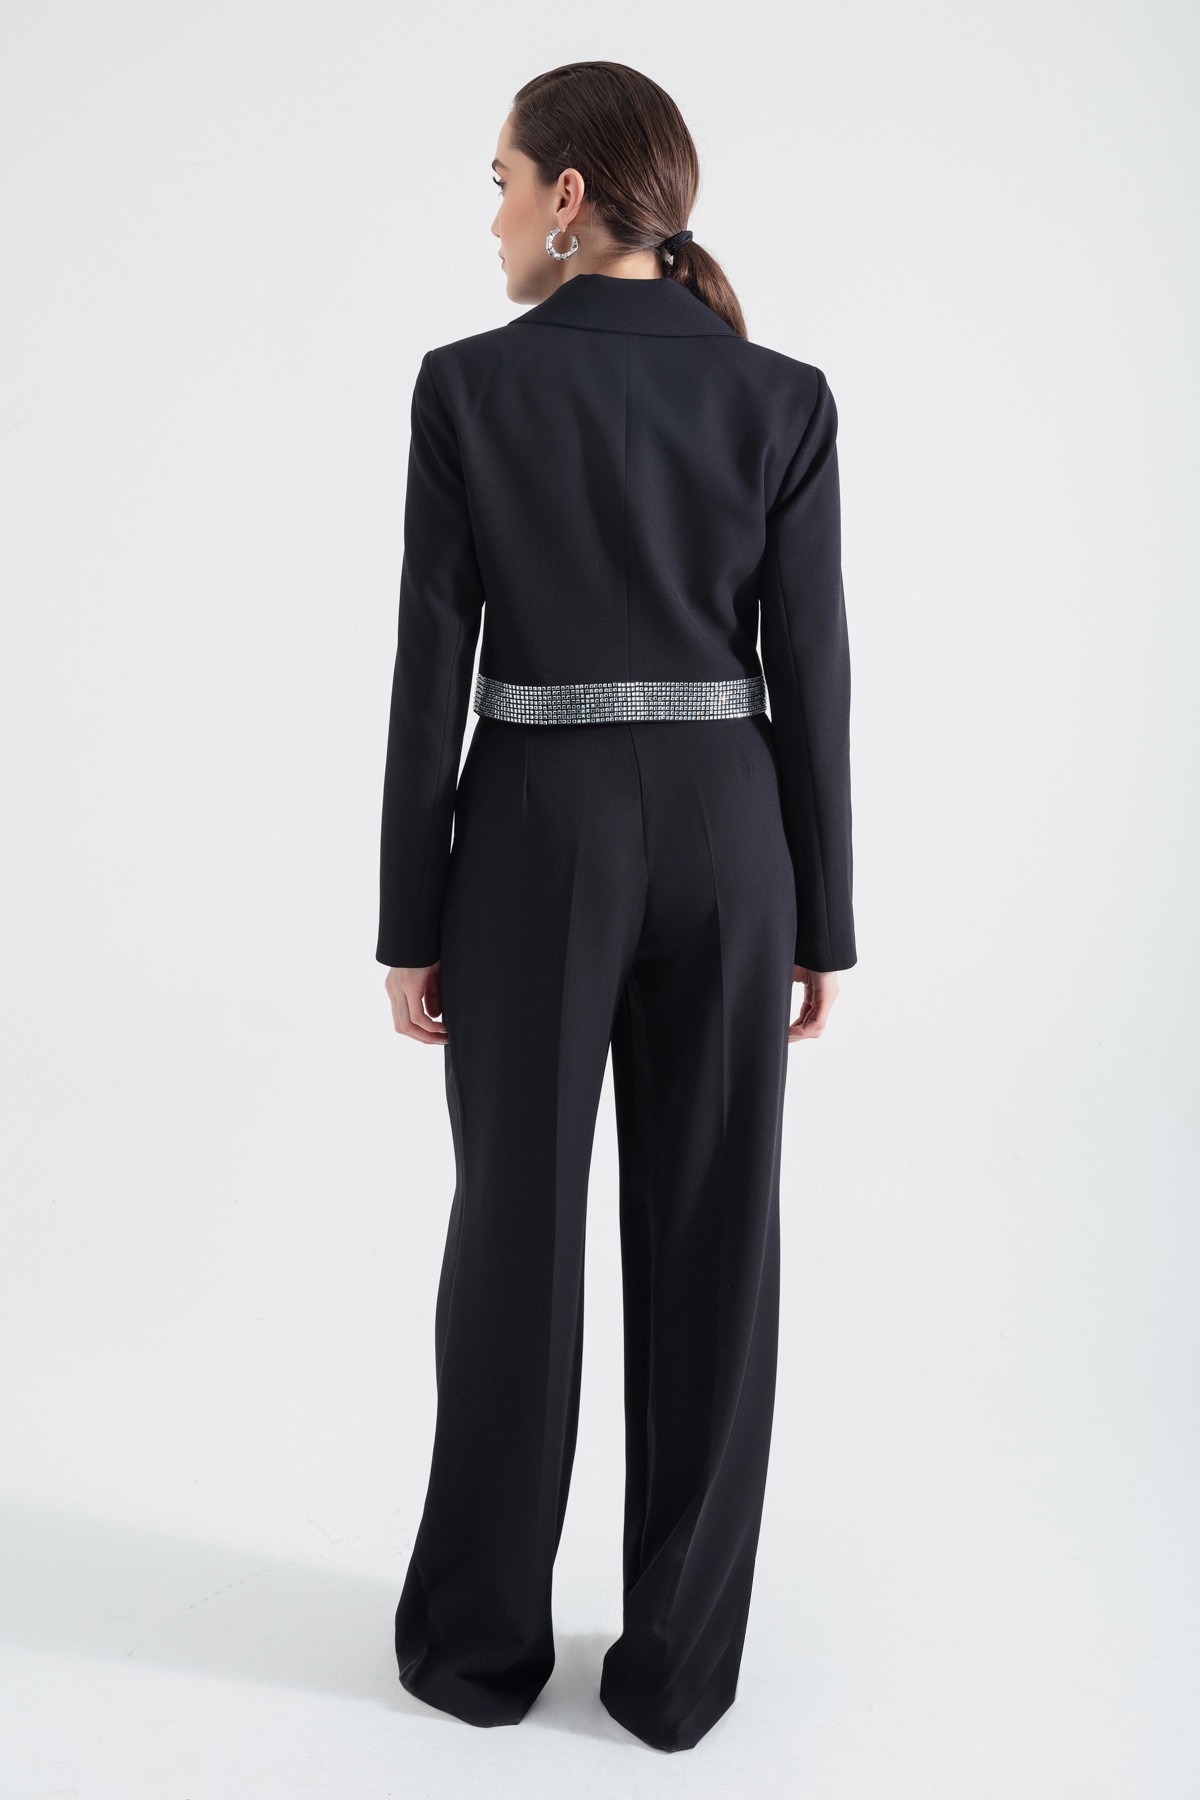 Kadın Tasarım Ceket Pantolon Takım - Siyah